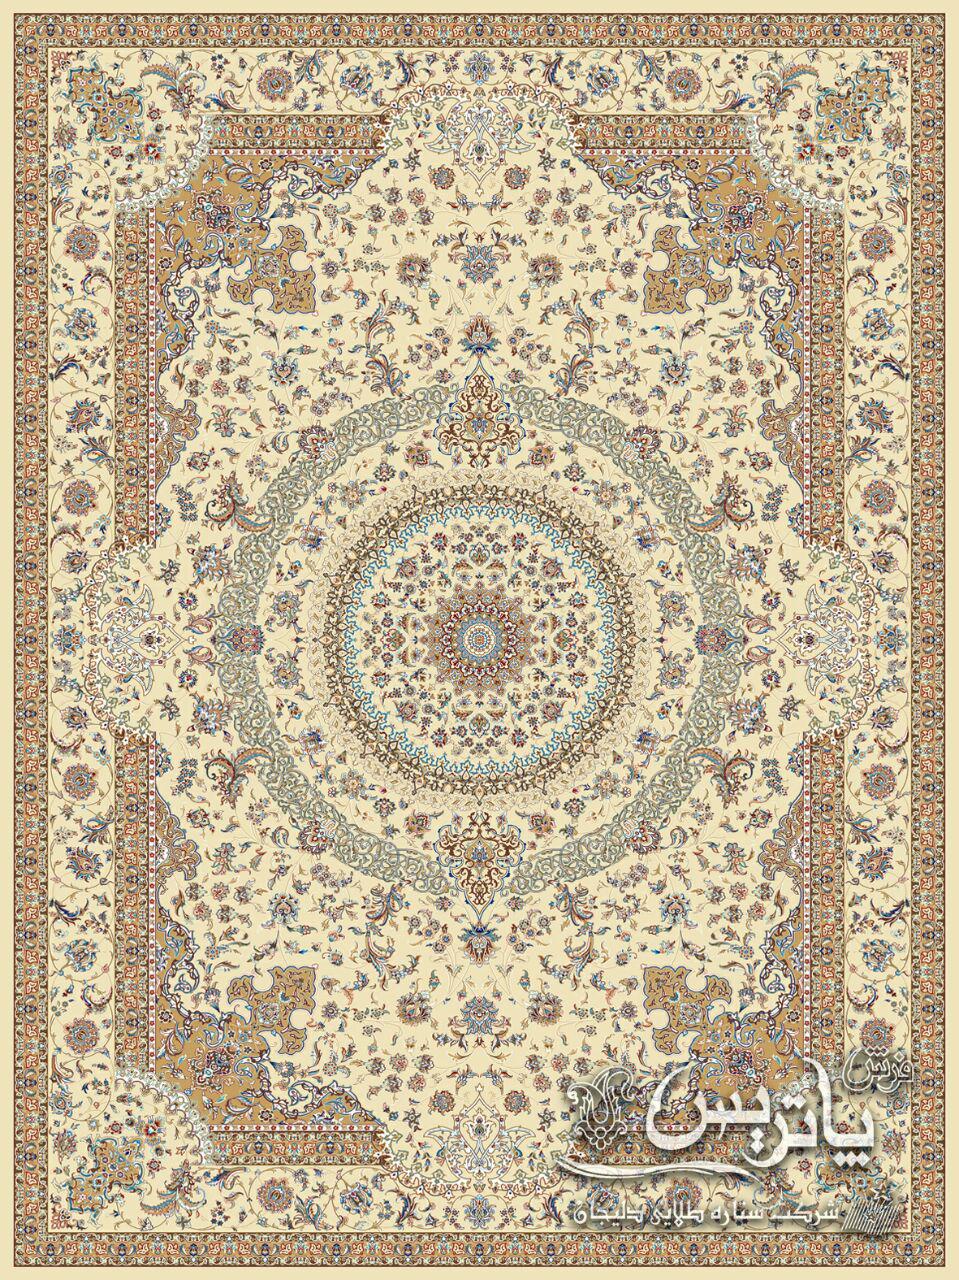 آبنوس کرم/دنیای فرش/فرش ایرانی/فرش ماشینی/donyayfarsh